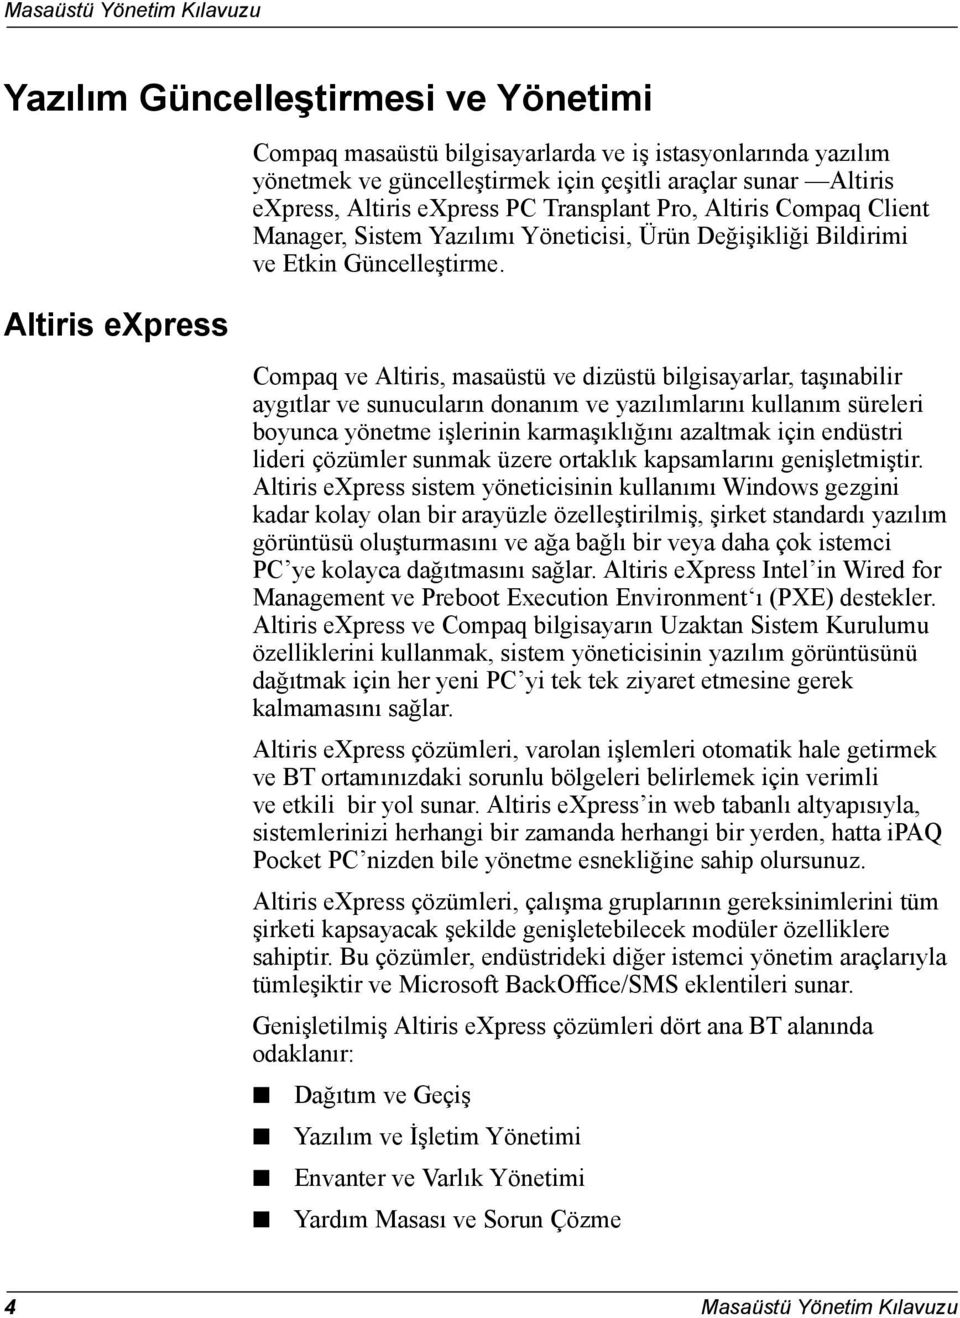 Altiris express Compaq ve Altiris, masaüstü ve dizüstü bilgisayarlar, taşınabilir aygıtlar ve sunucuların donanım ve yazılımlarını kullanım süreleri boyunca yönetme işlerinin karmaşıklığını azaltmak